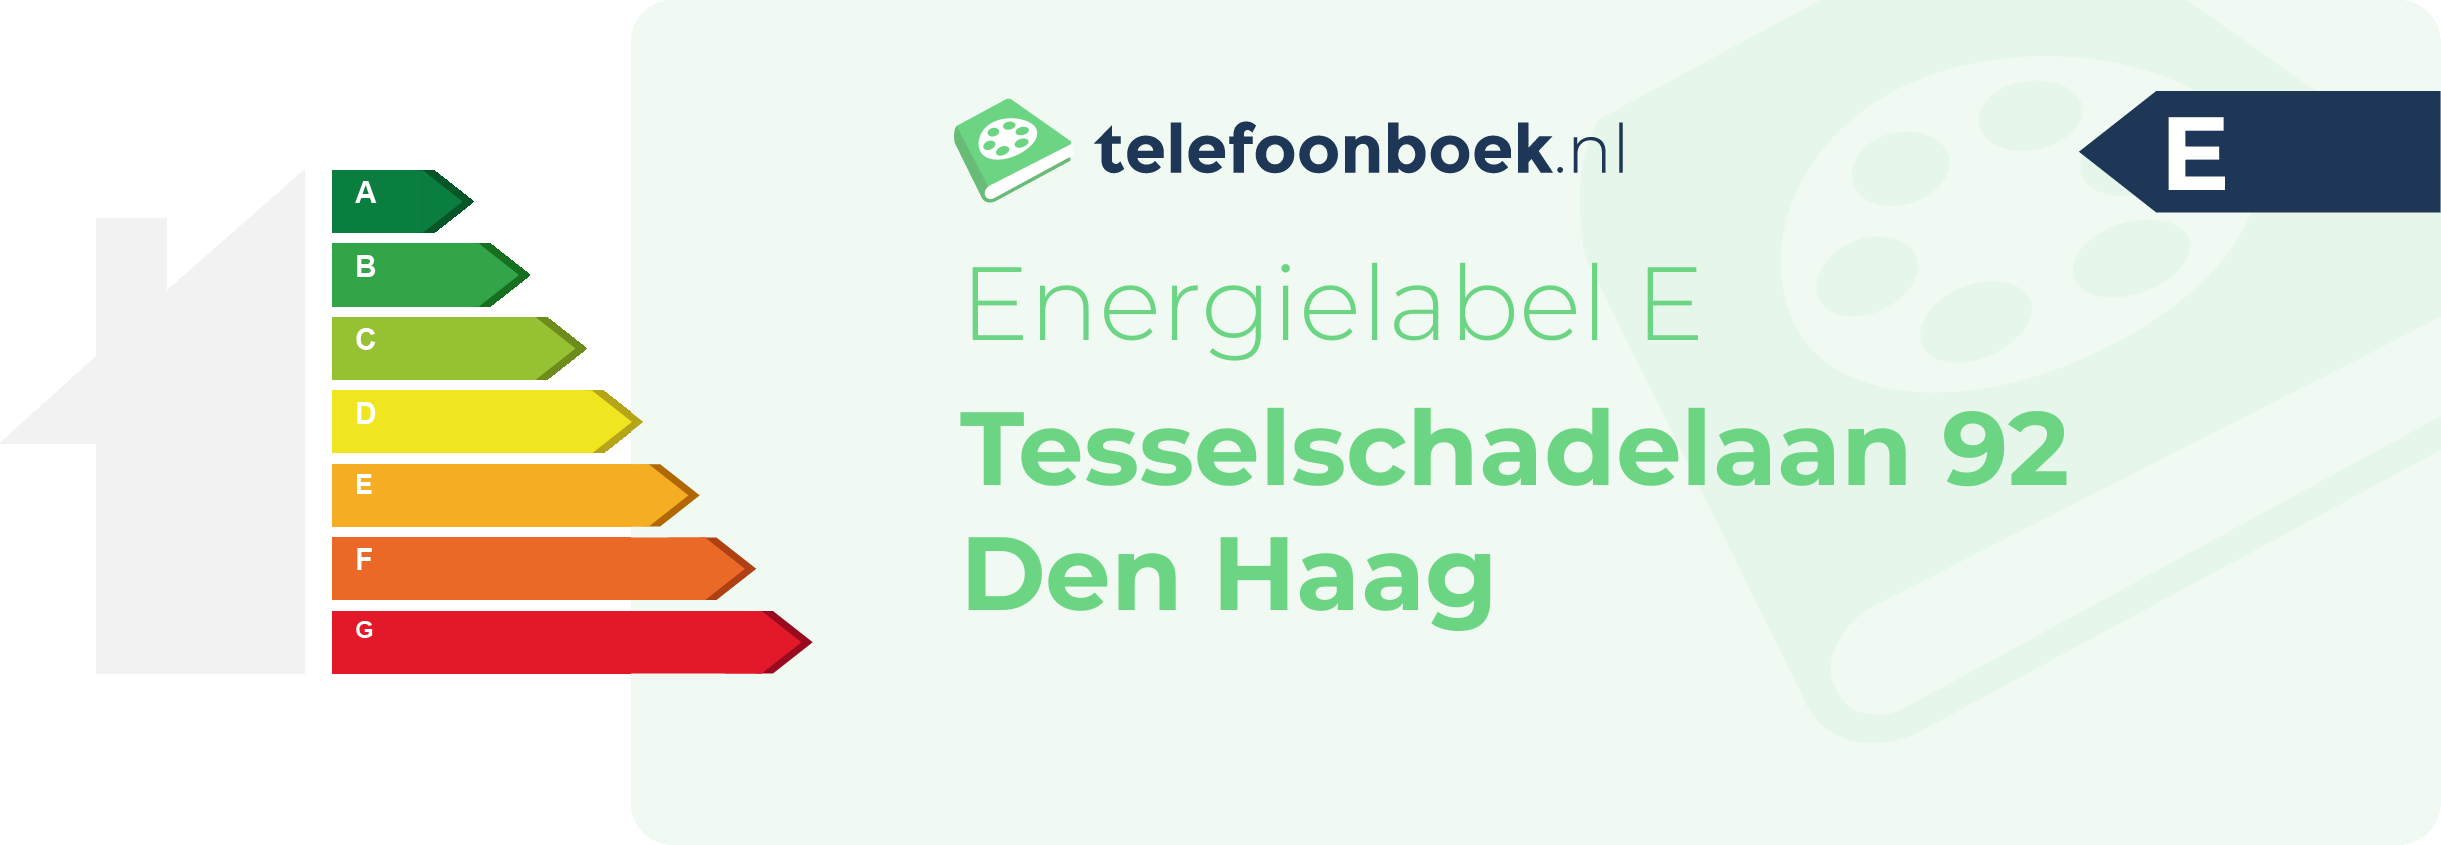 Energielabel Tesselschadelaan 92 Den Haag